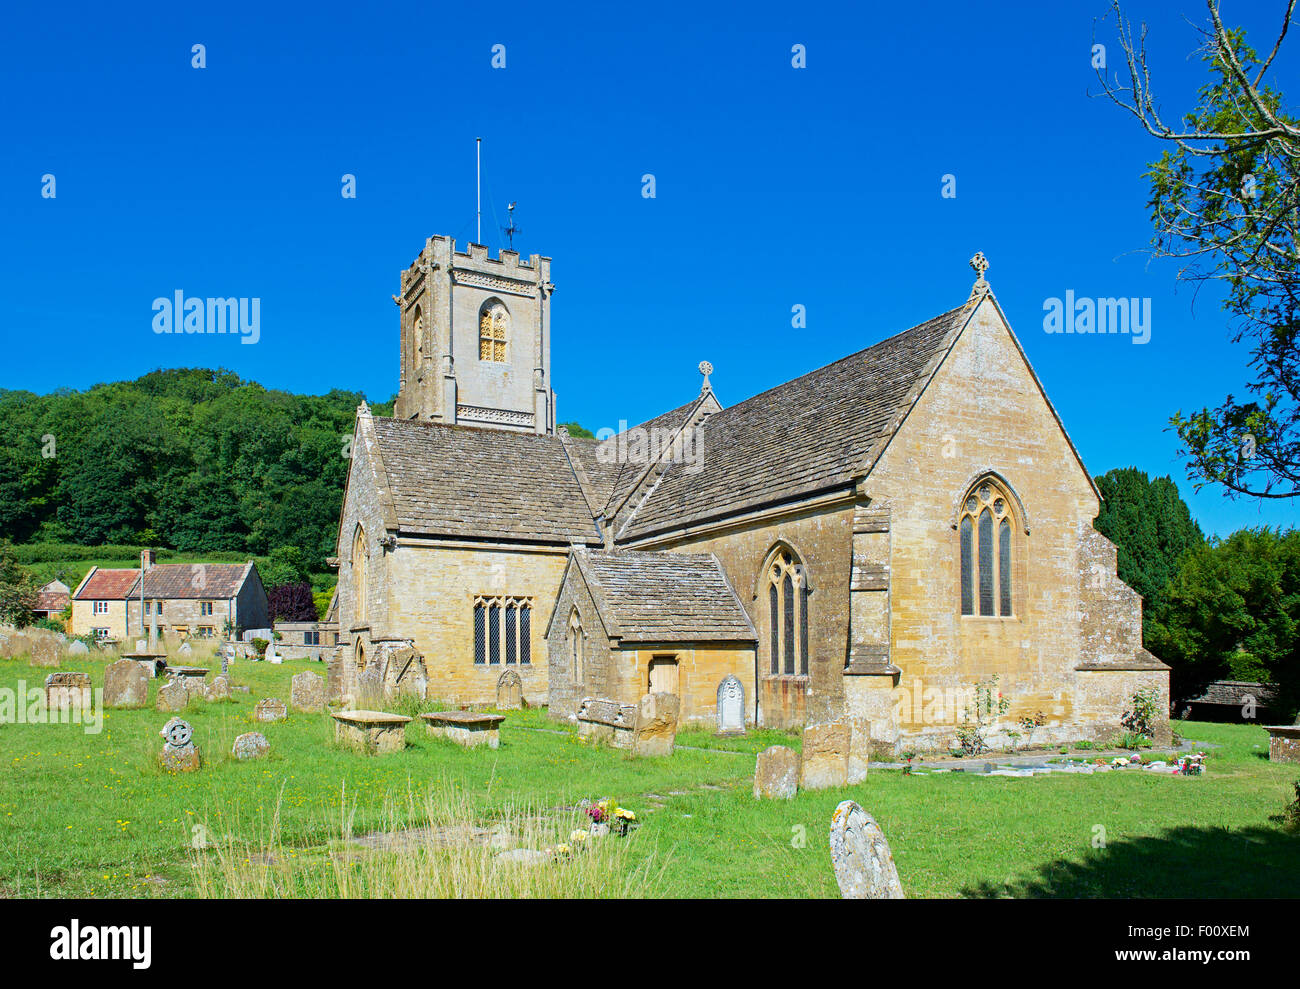 St Catherine's Church, dans le village de Montacute, Somerset, England UK Banque D'Images